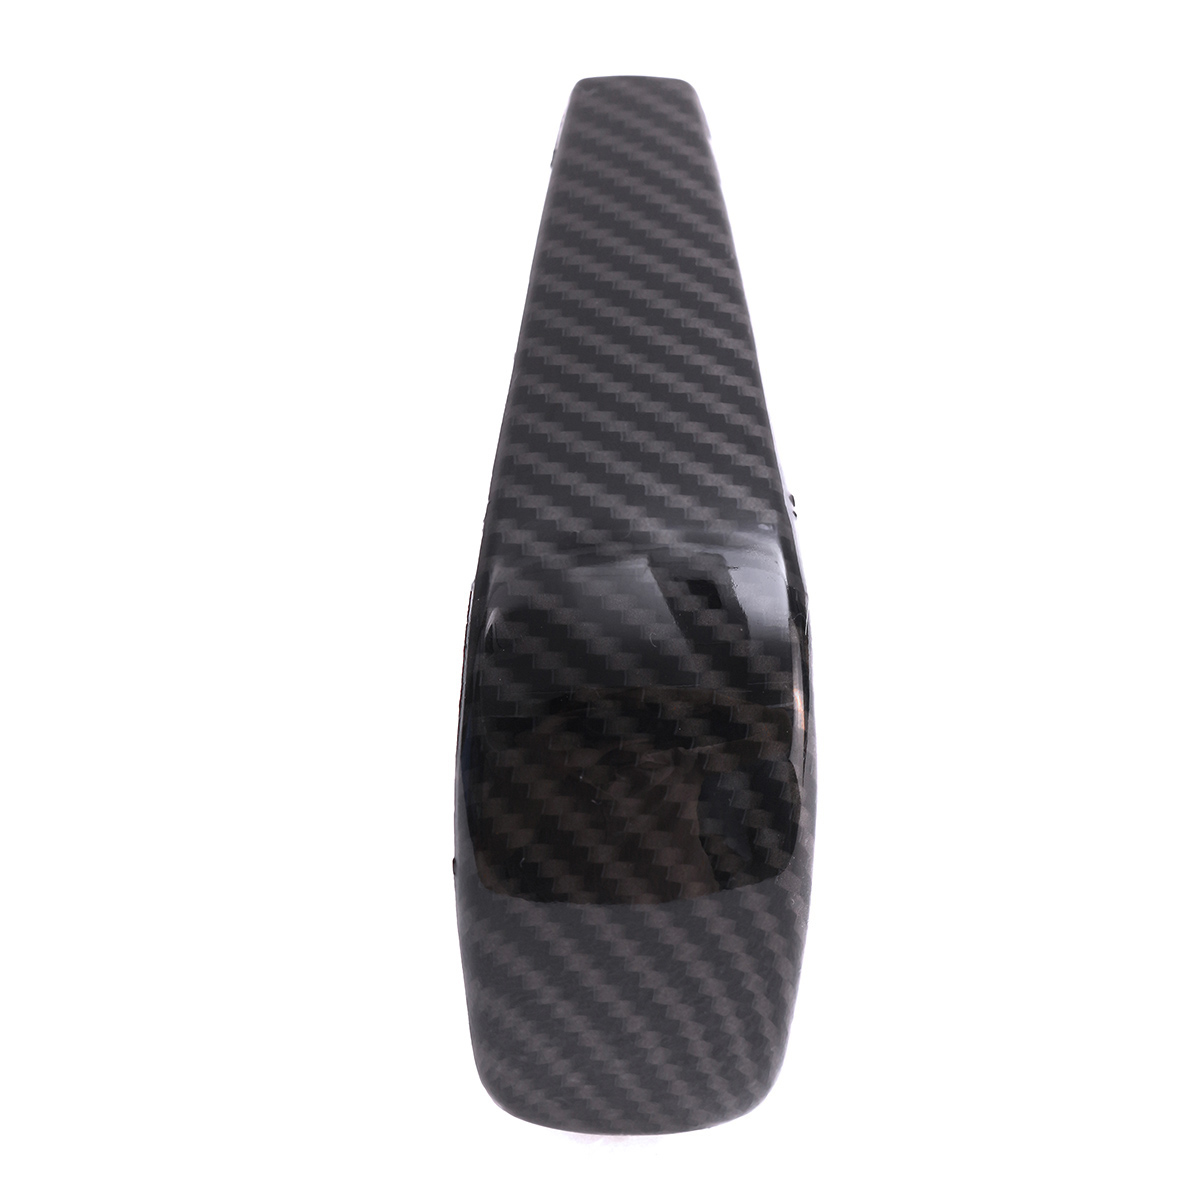 Carbon Fiber Gear Shift Knob Head Cover for BMW 3 Series E90 E91 E92 E93